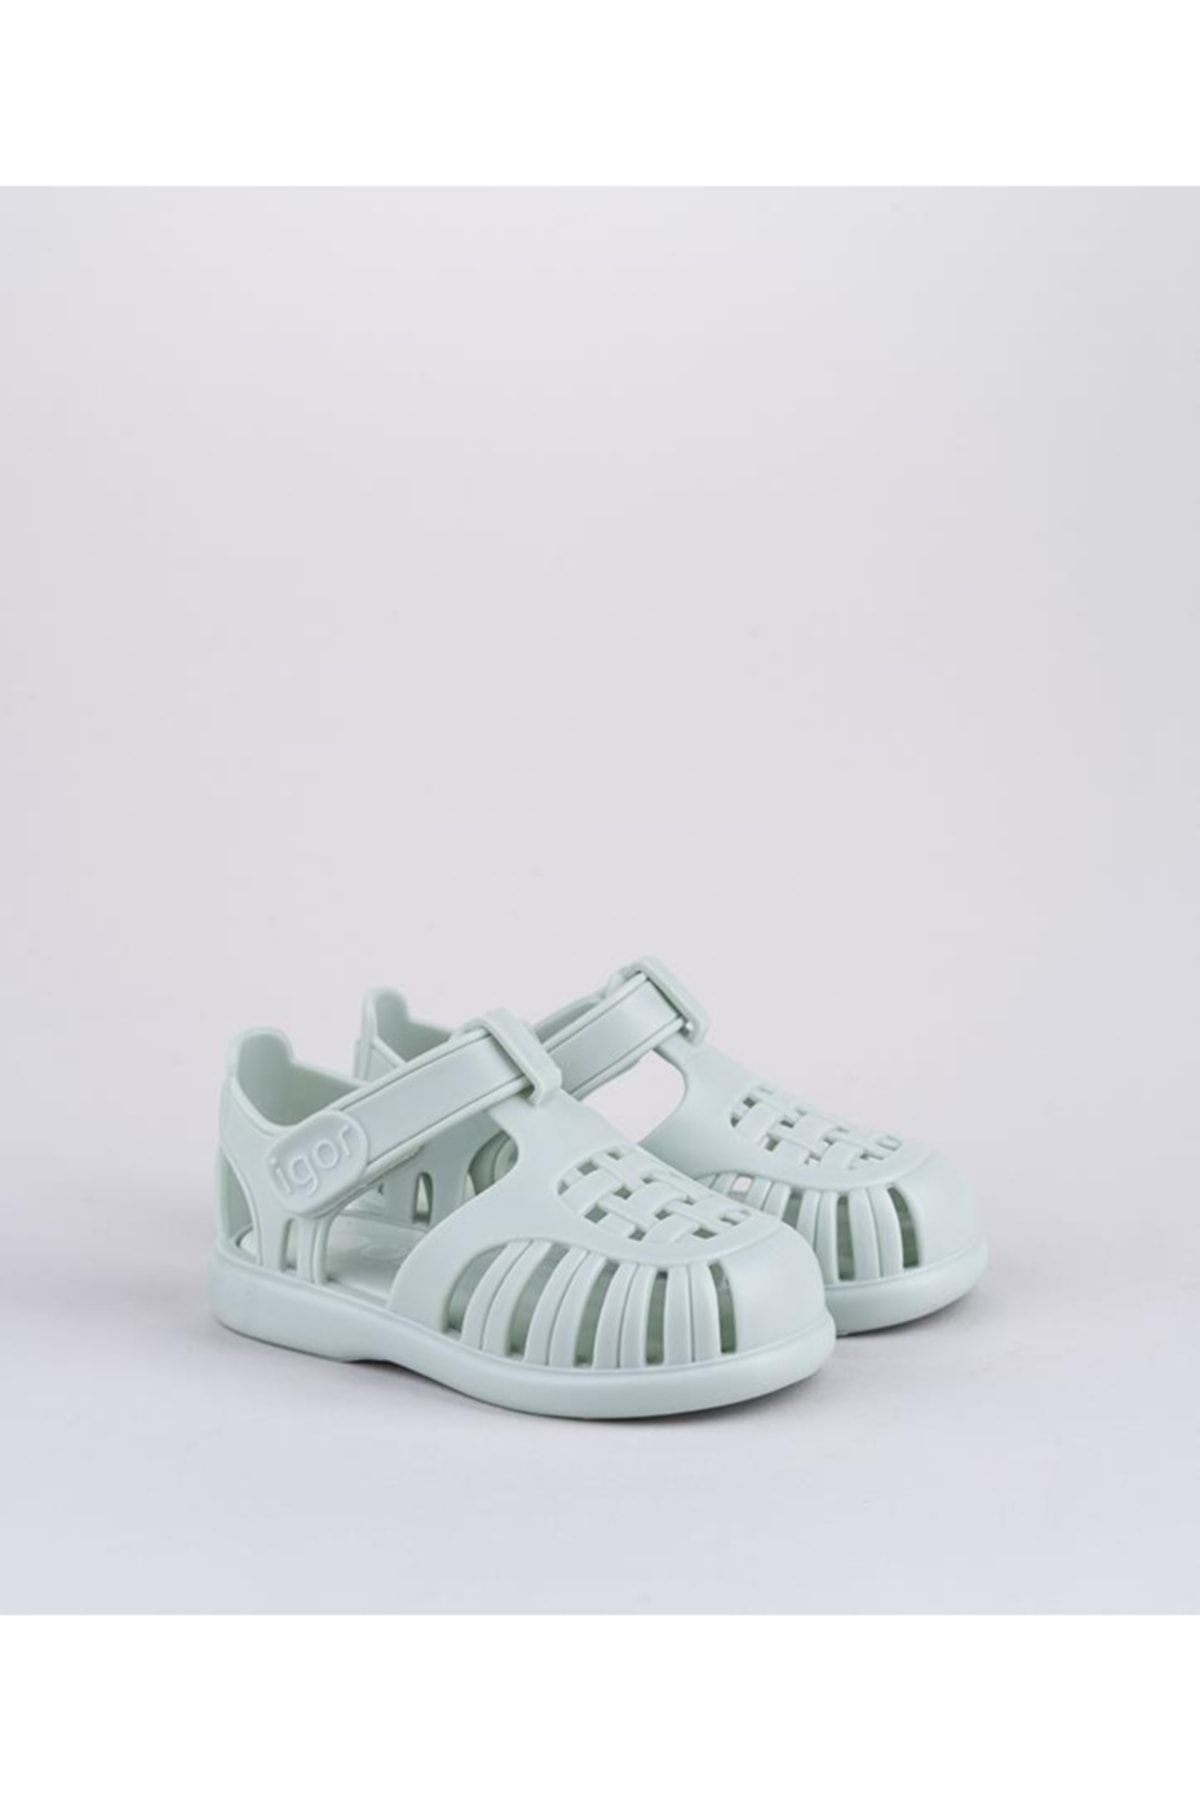 IGOR S10271-026 Tobby Solıd Bebek Çocuk Sandalet